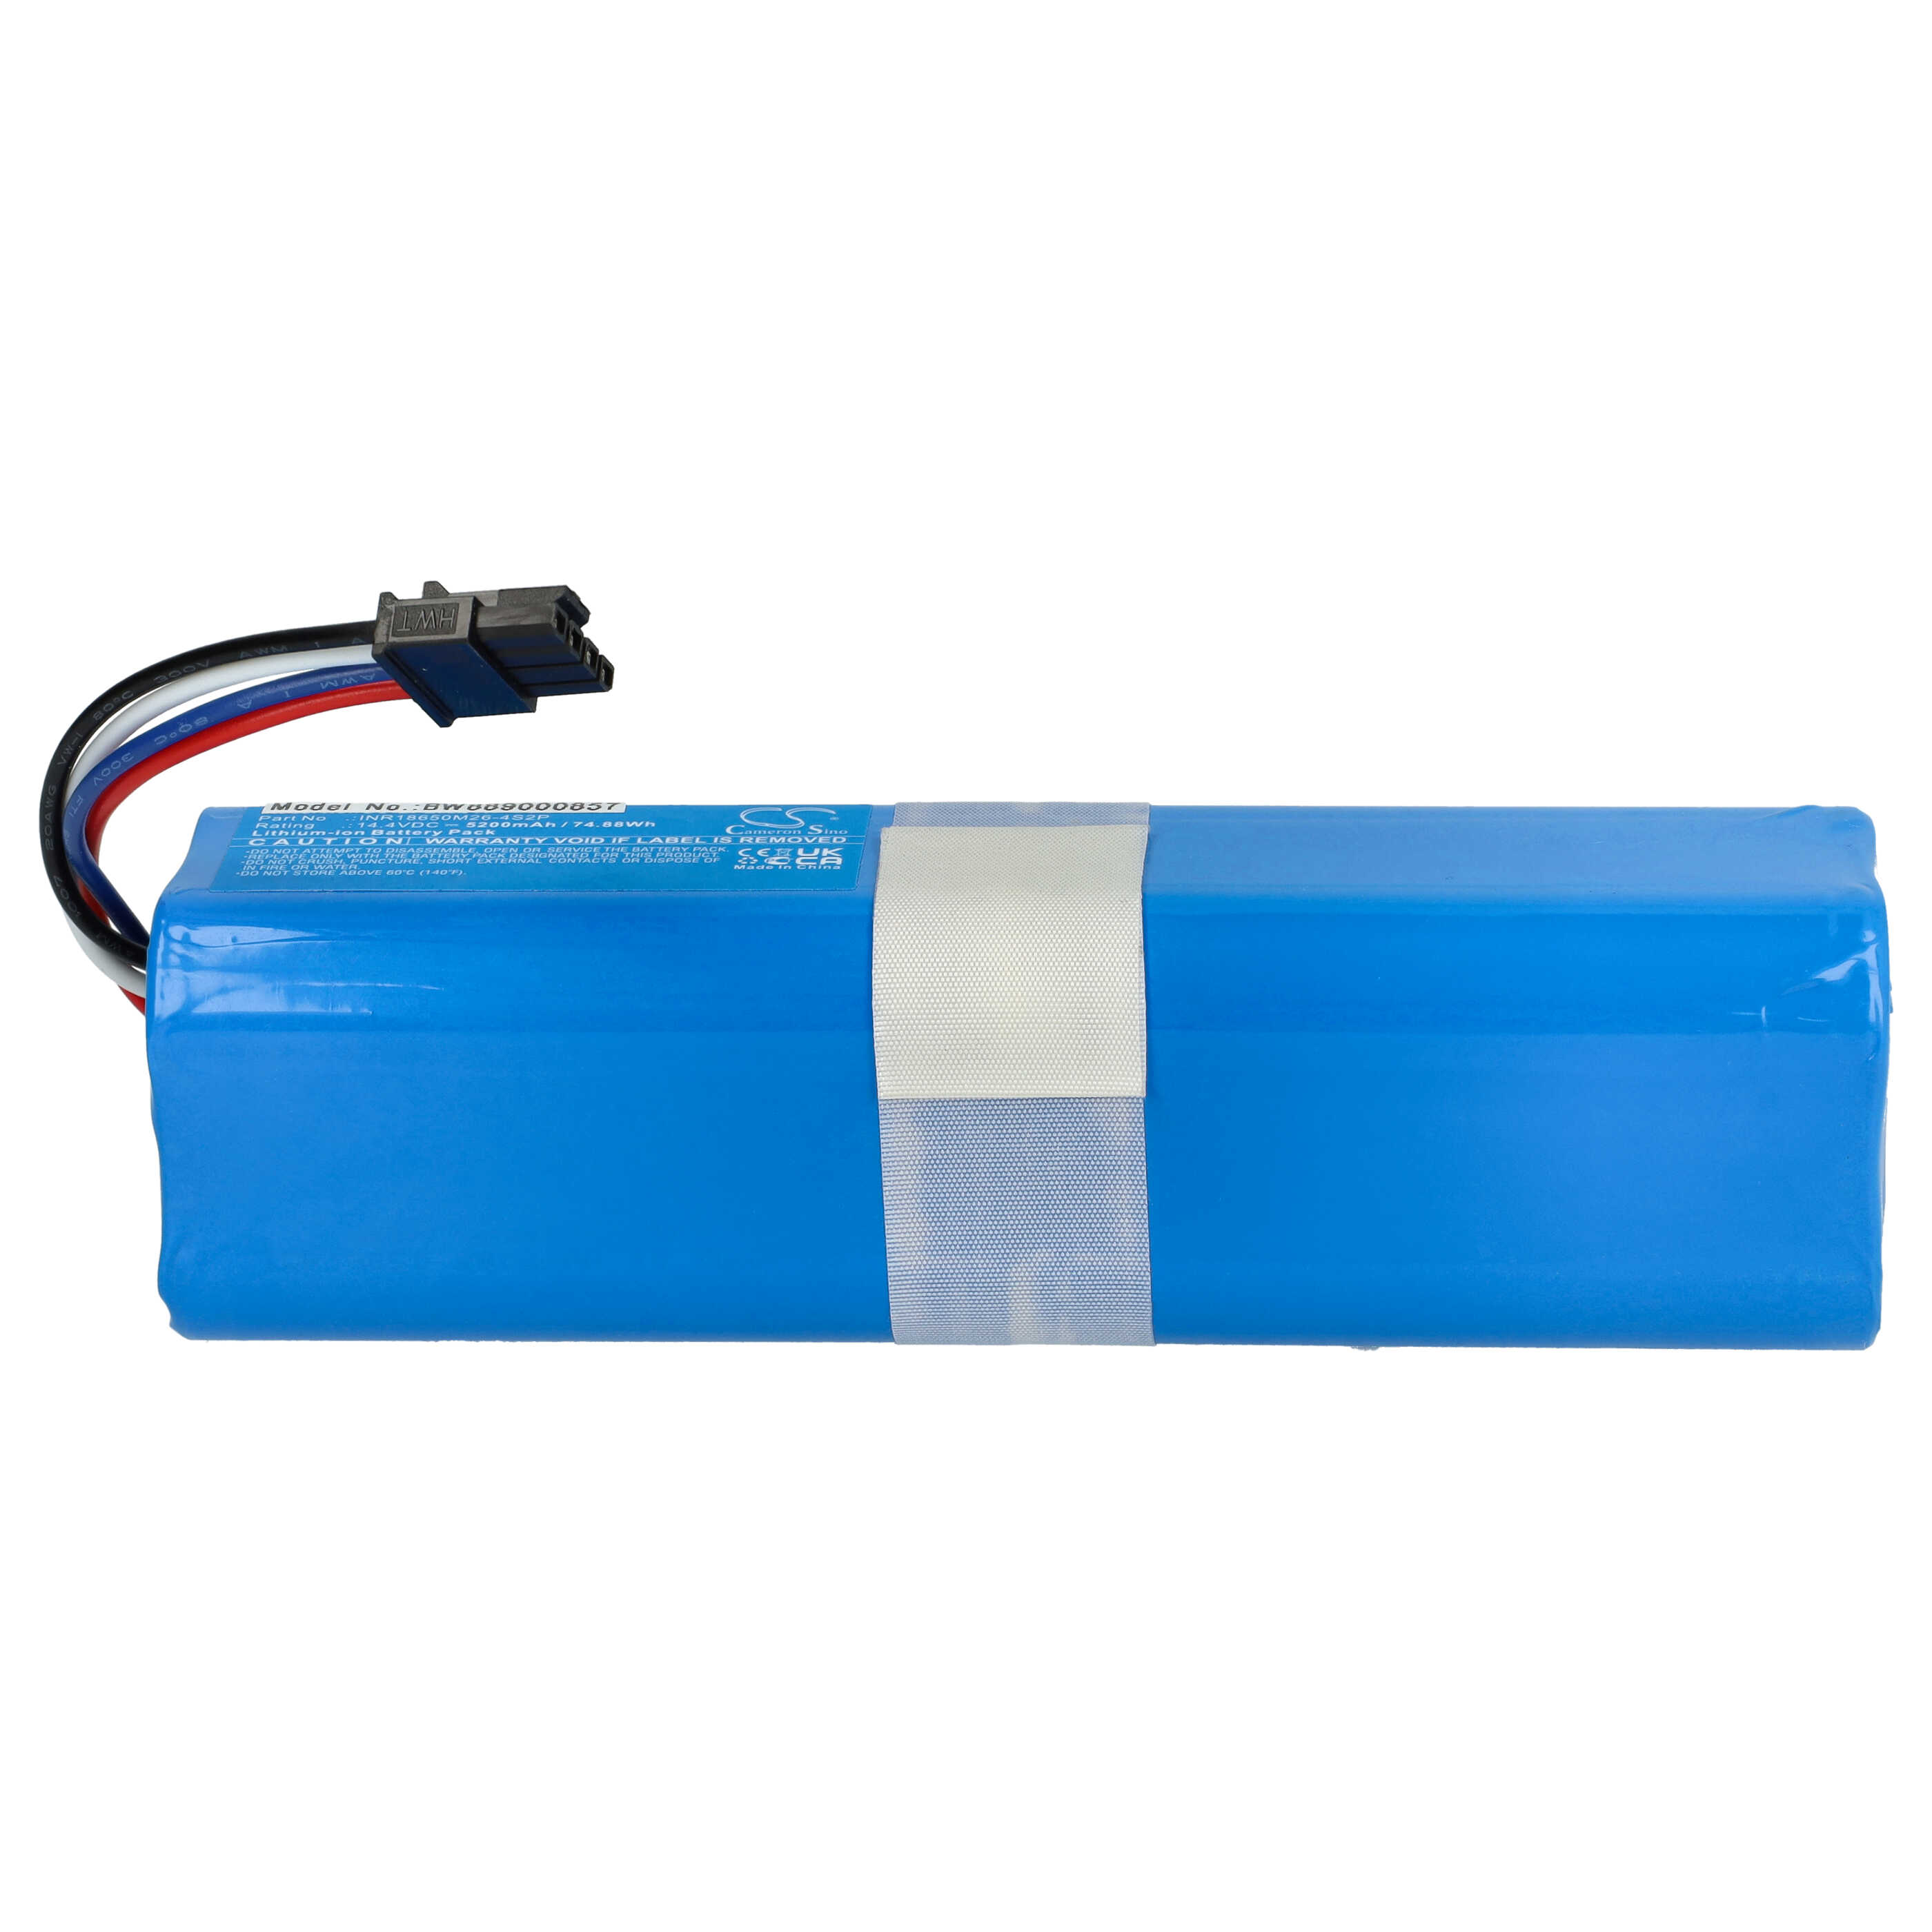 Batterie remplace 360 INR18650 M26-4S2P, D080-4S2P pour robot aspirateur - 5200mAh 14,4V Li-ion